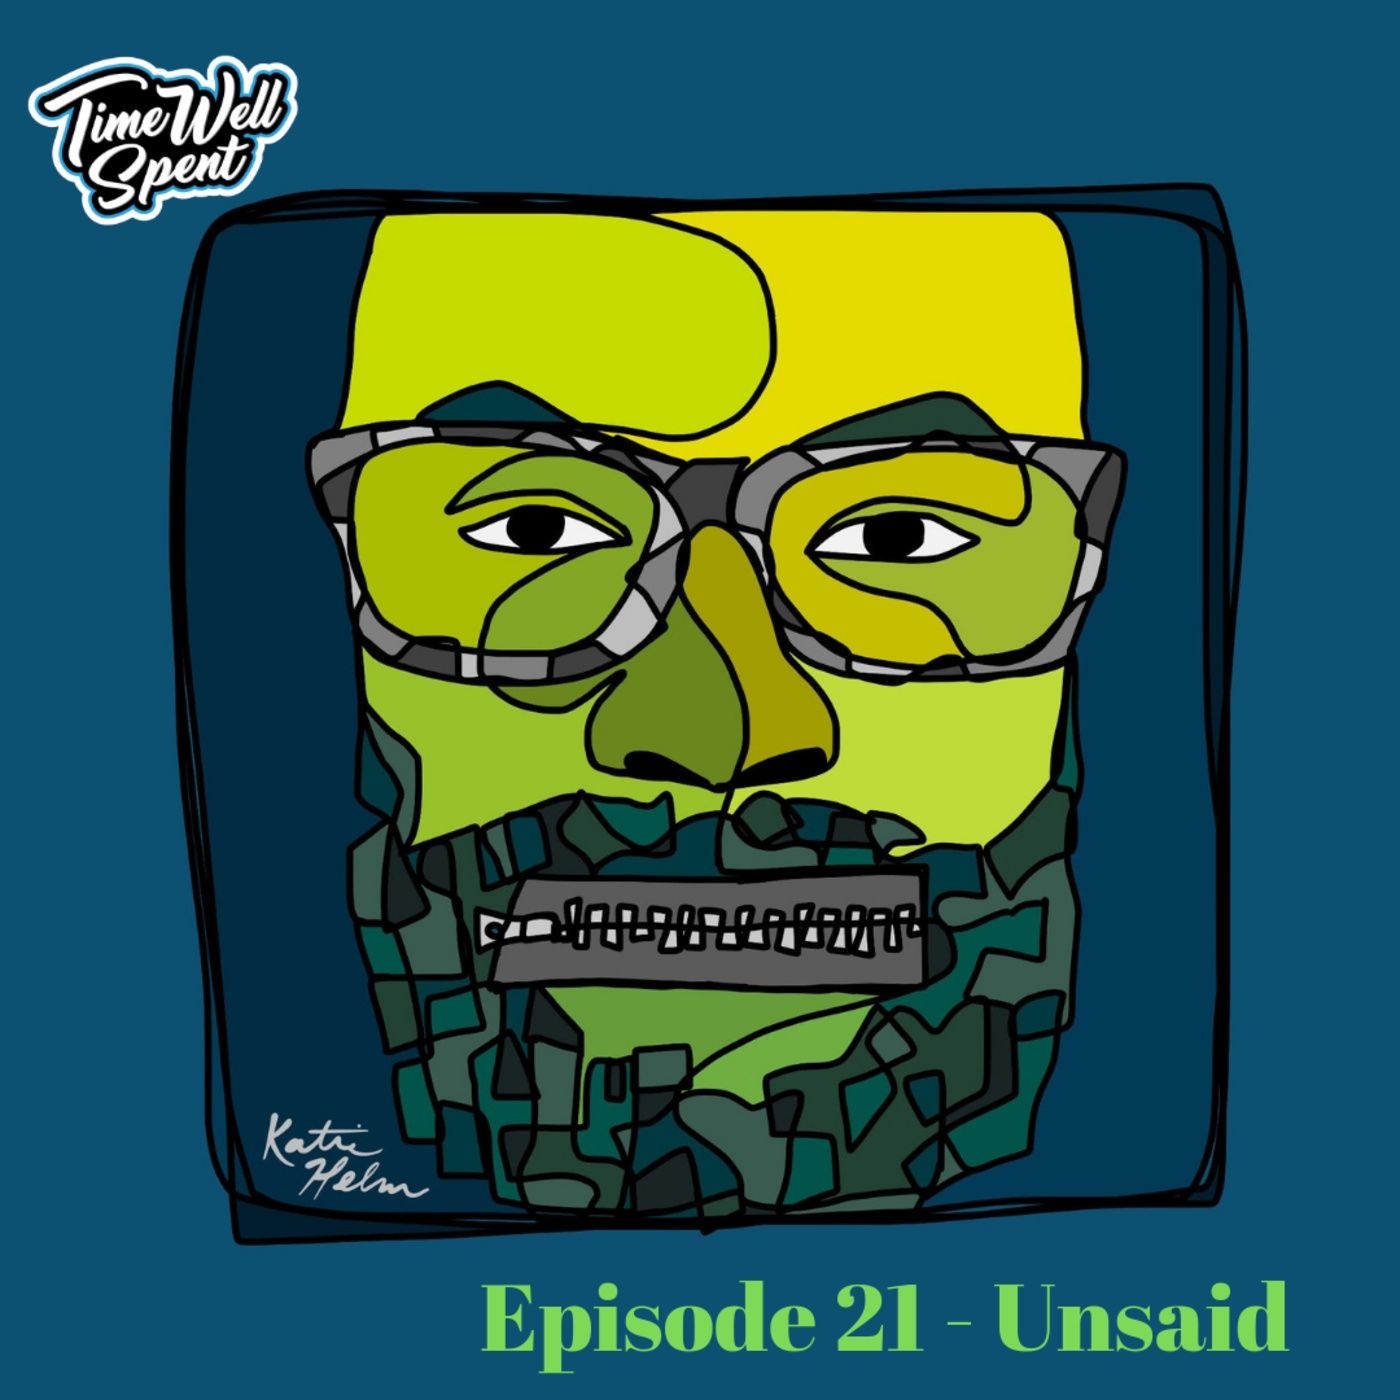 Episode 21 - Unsaid